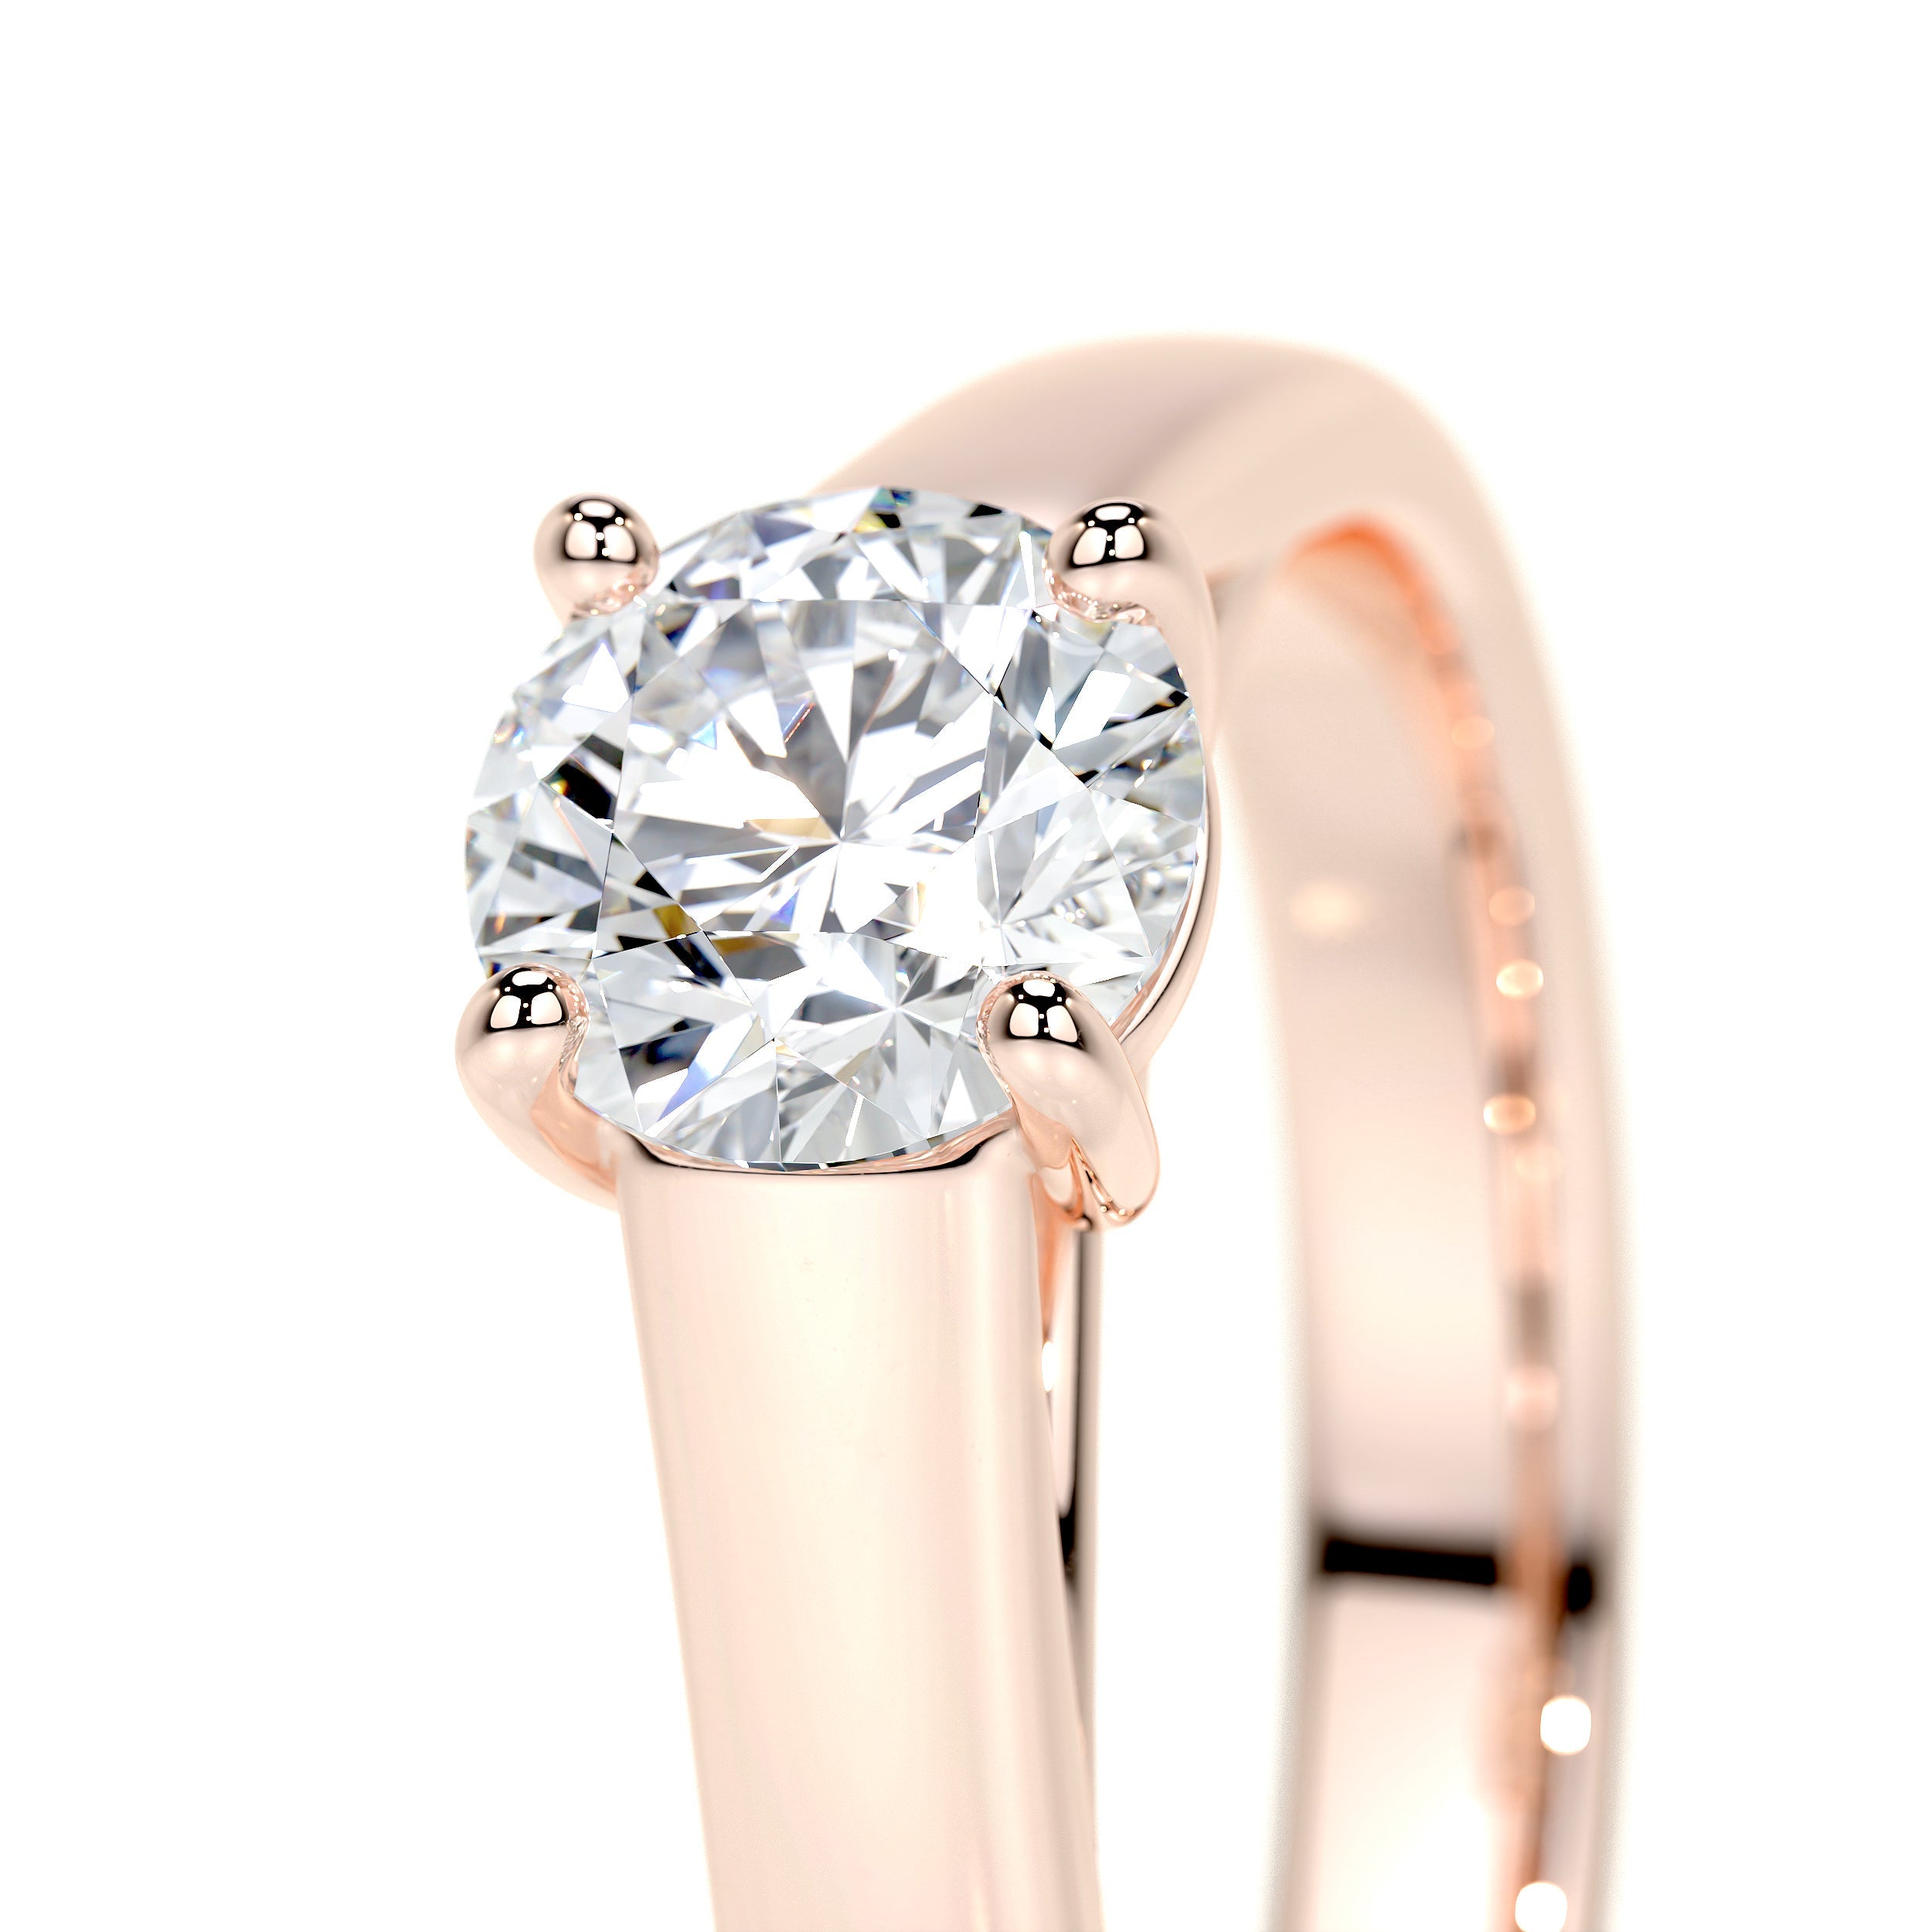 Nola Lab Grown Diamond Ring   (0.80 Carat) -14K Rose Gold